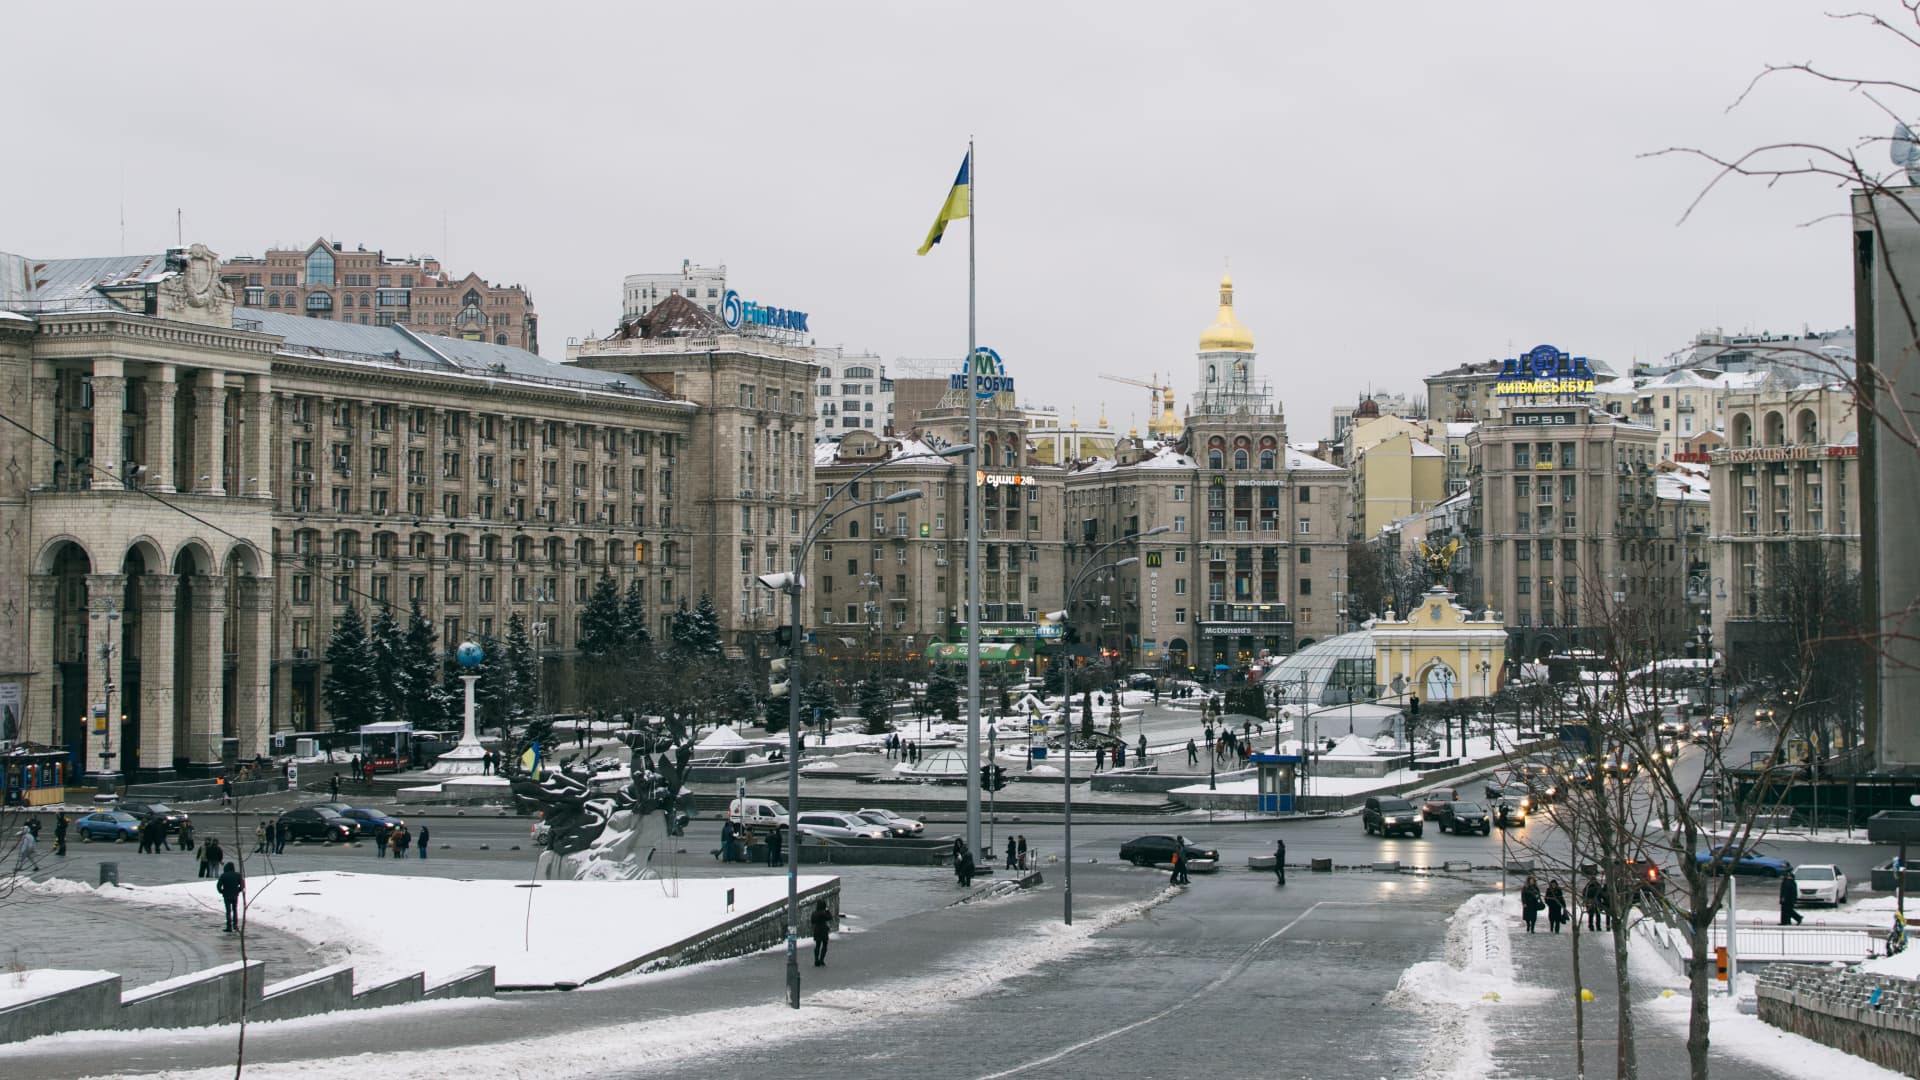 Central square in Kiev, Ukraine